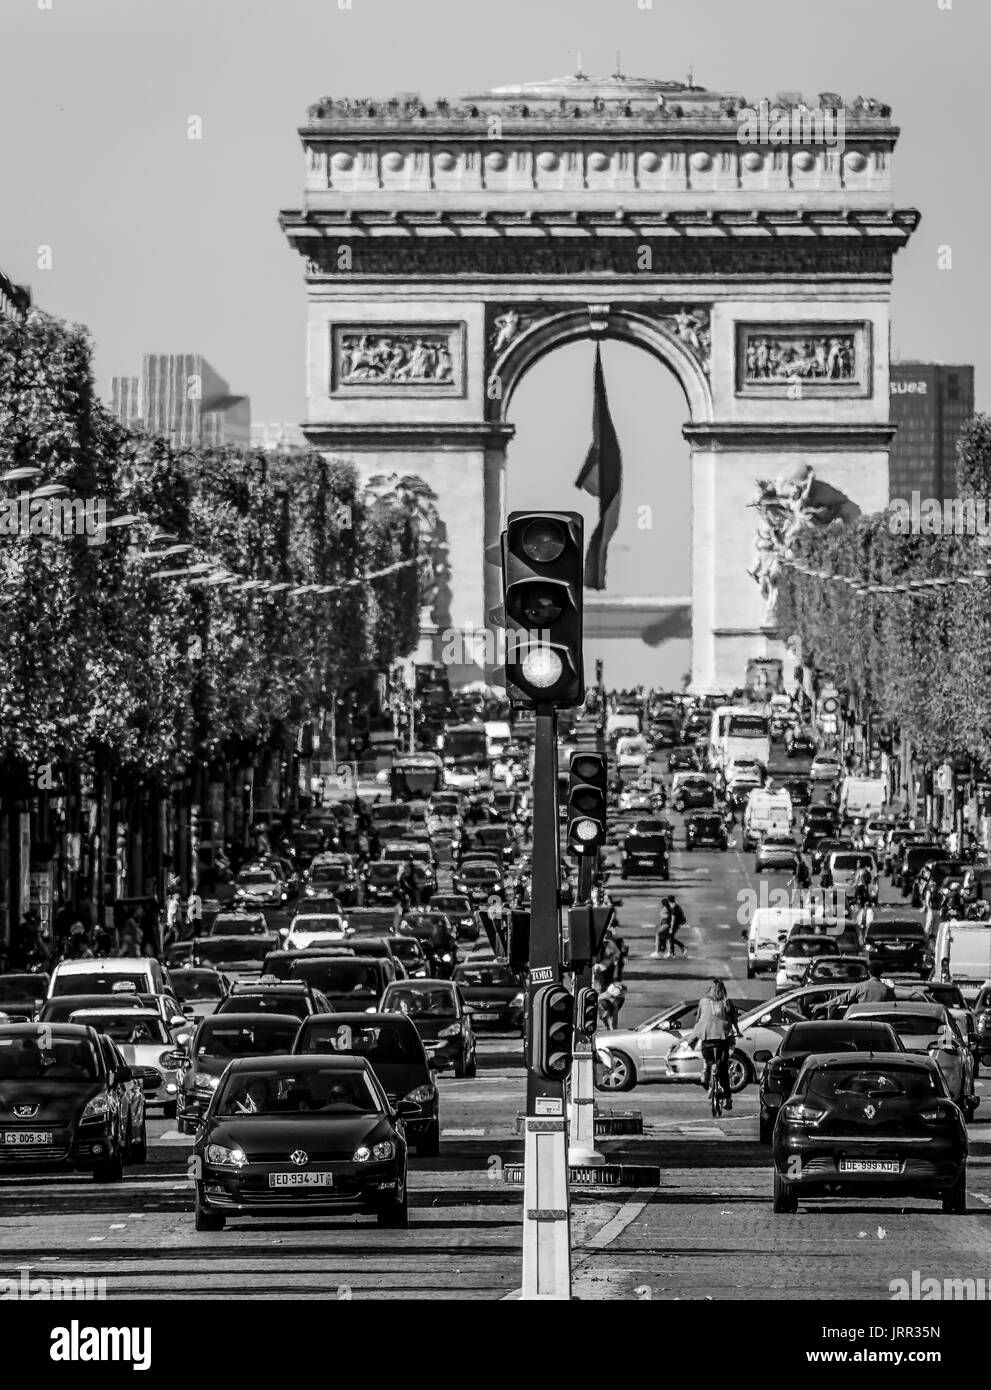 Berühmten Champs Elysees Boulevard in Paris Arc de Triomphe - Triumph Bogen - PARIS/FRANKREICH - 24. SEPTEMBER 2017 Stockfoto